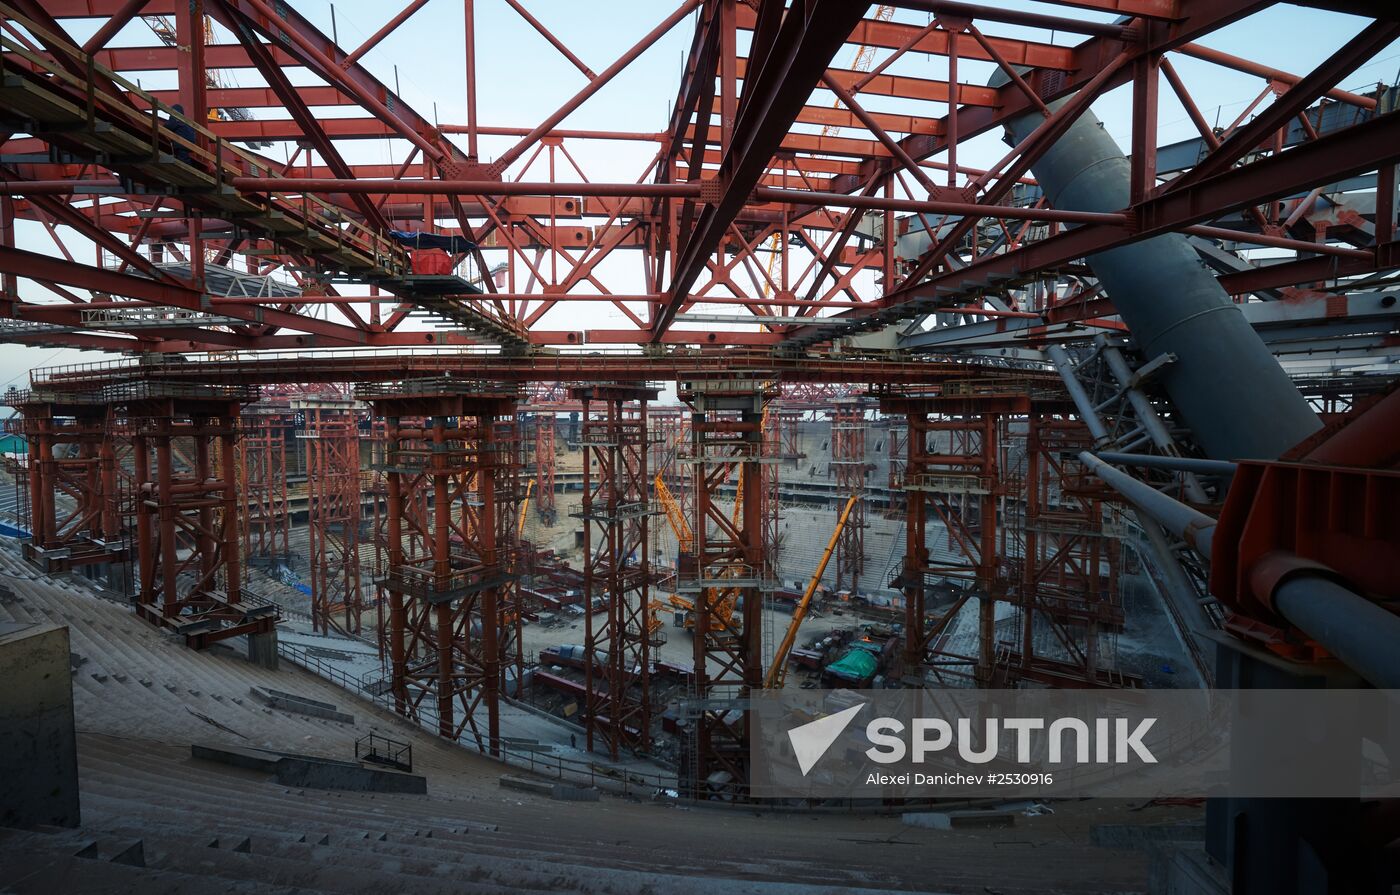 Zenit Arena under construction